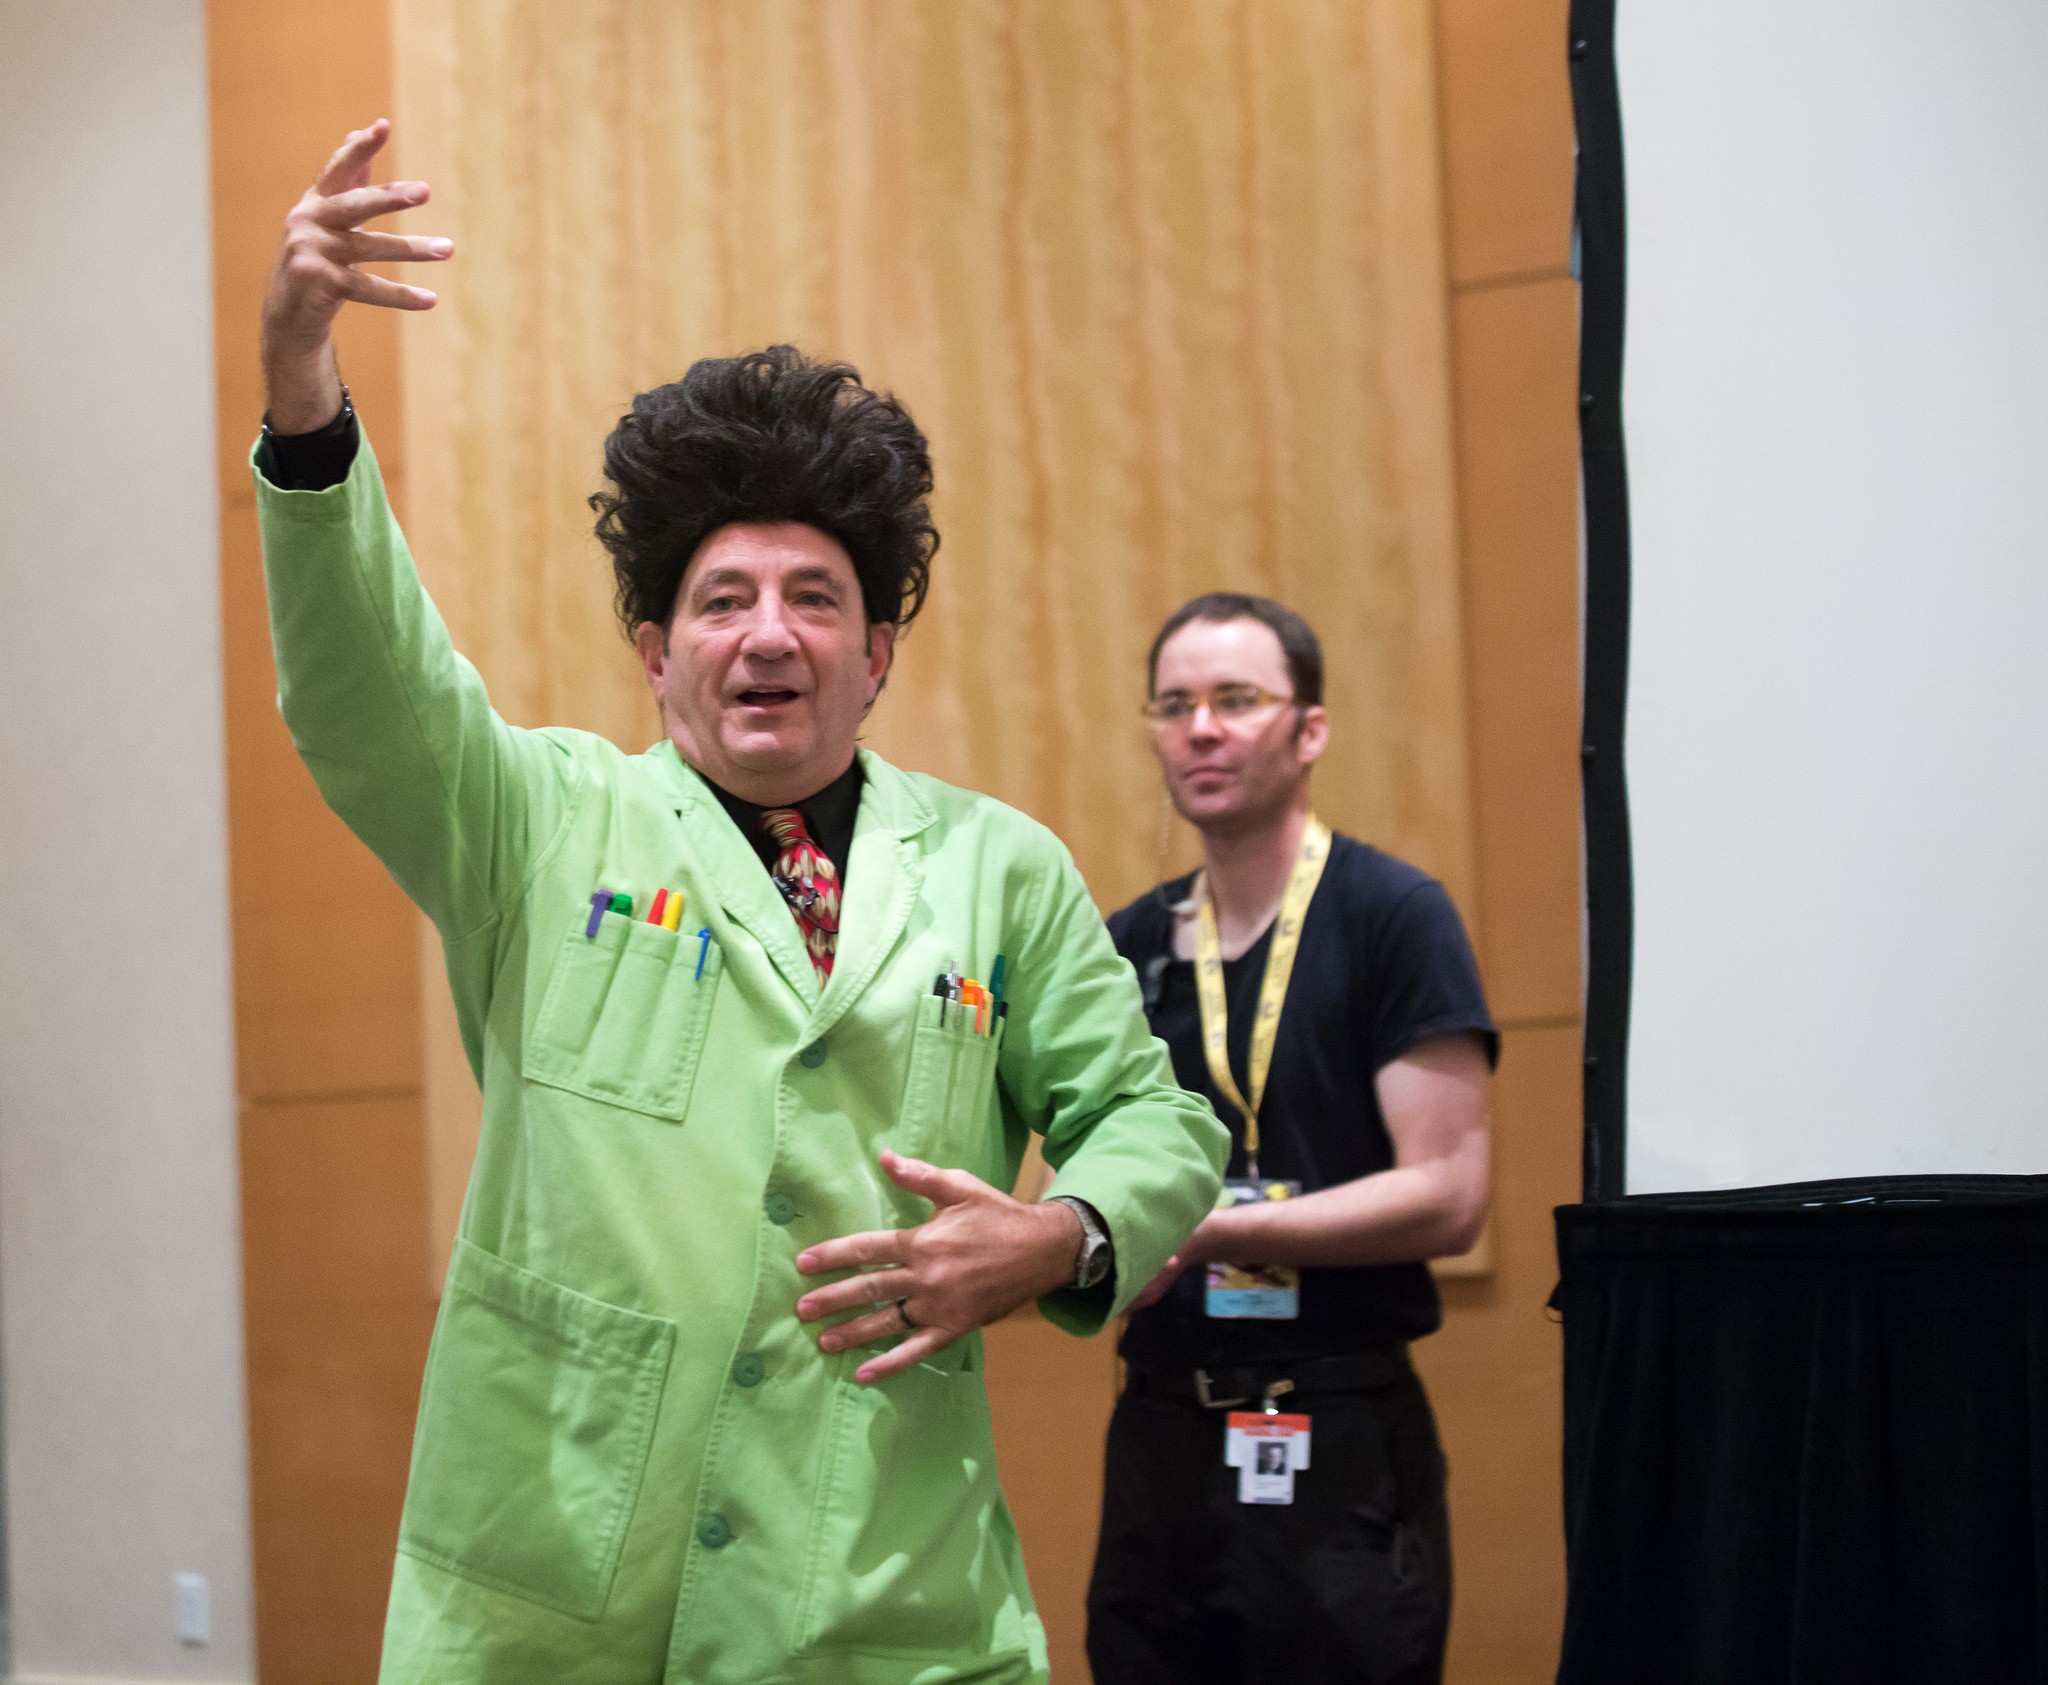 Paul Zaloom retorna ao personagem em palestras e apresentações ao redor do mundo (Foto: Flickr/Terry Robinson)